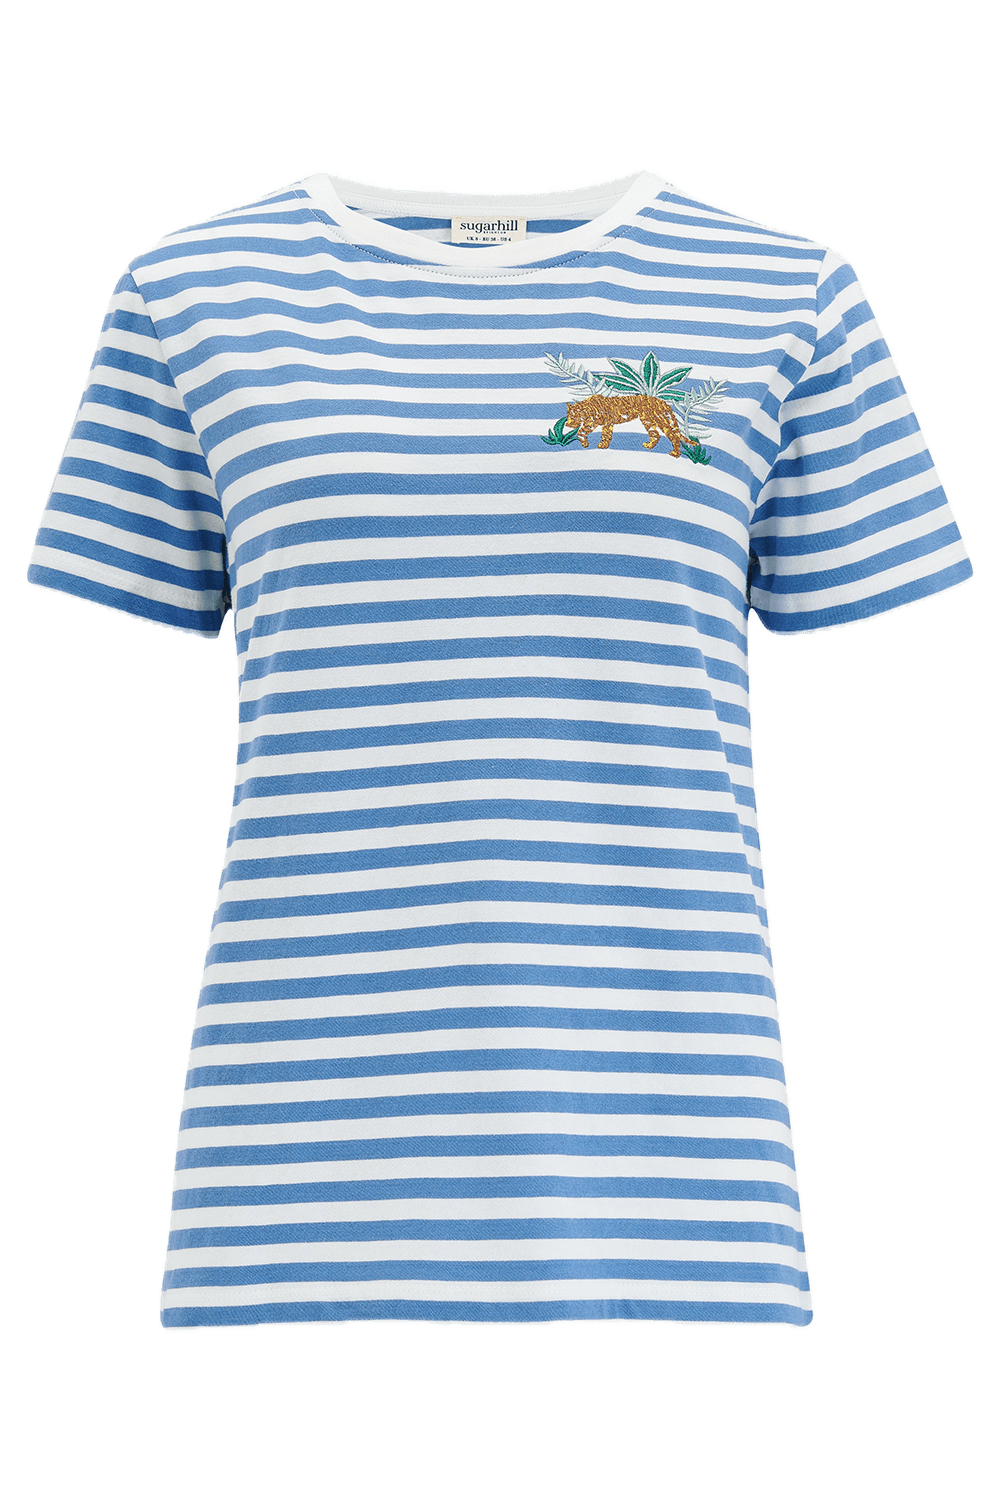 Camiseta Sugarhill Maggie Blue White Tiger Embroidery - ECRU